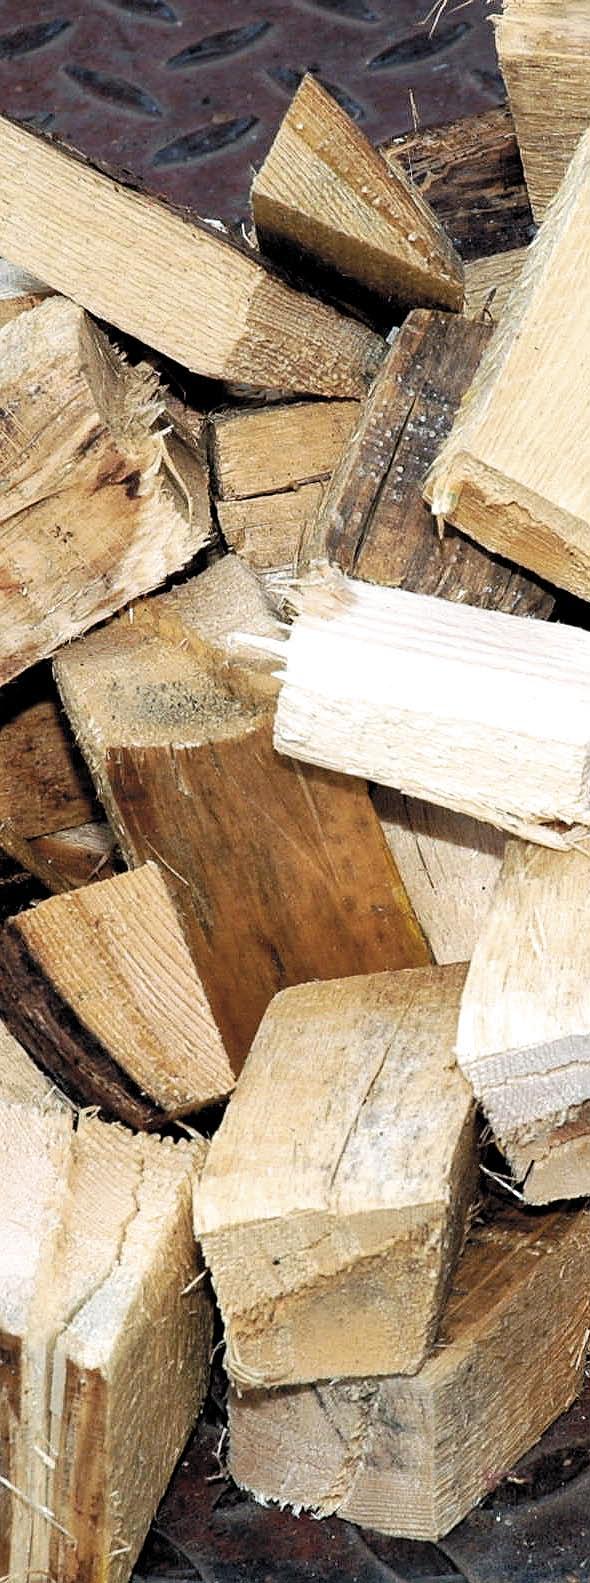 palivo dřevo (J P B) spalování kusového dřeva jednoduchá, časově nenáročná obsluha, údržba a nízké provozní náklady louhá doba hoření, hmotnost 505 kg minimální emisní zátěž pro okolí a vysoká